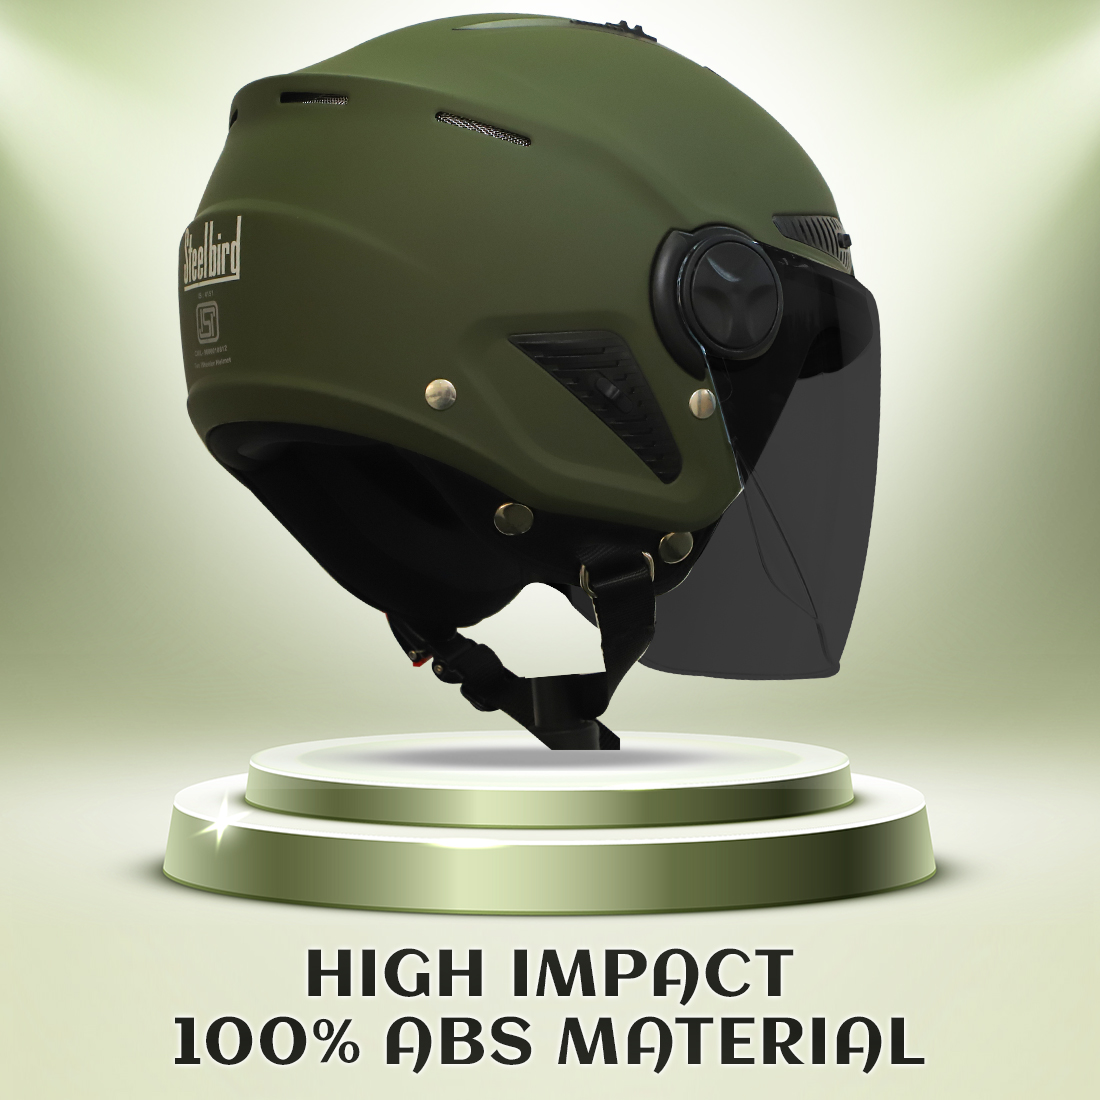 Steelbird SBH-24 Boxx ISI Certified Open Face Helmet For Men And Women (Matt Battle Green With Smoke Visor)